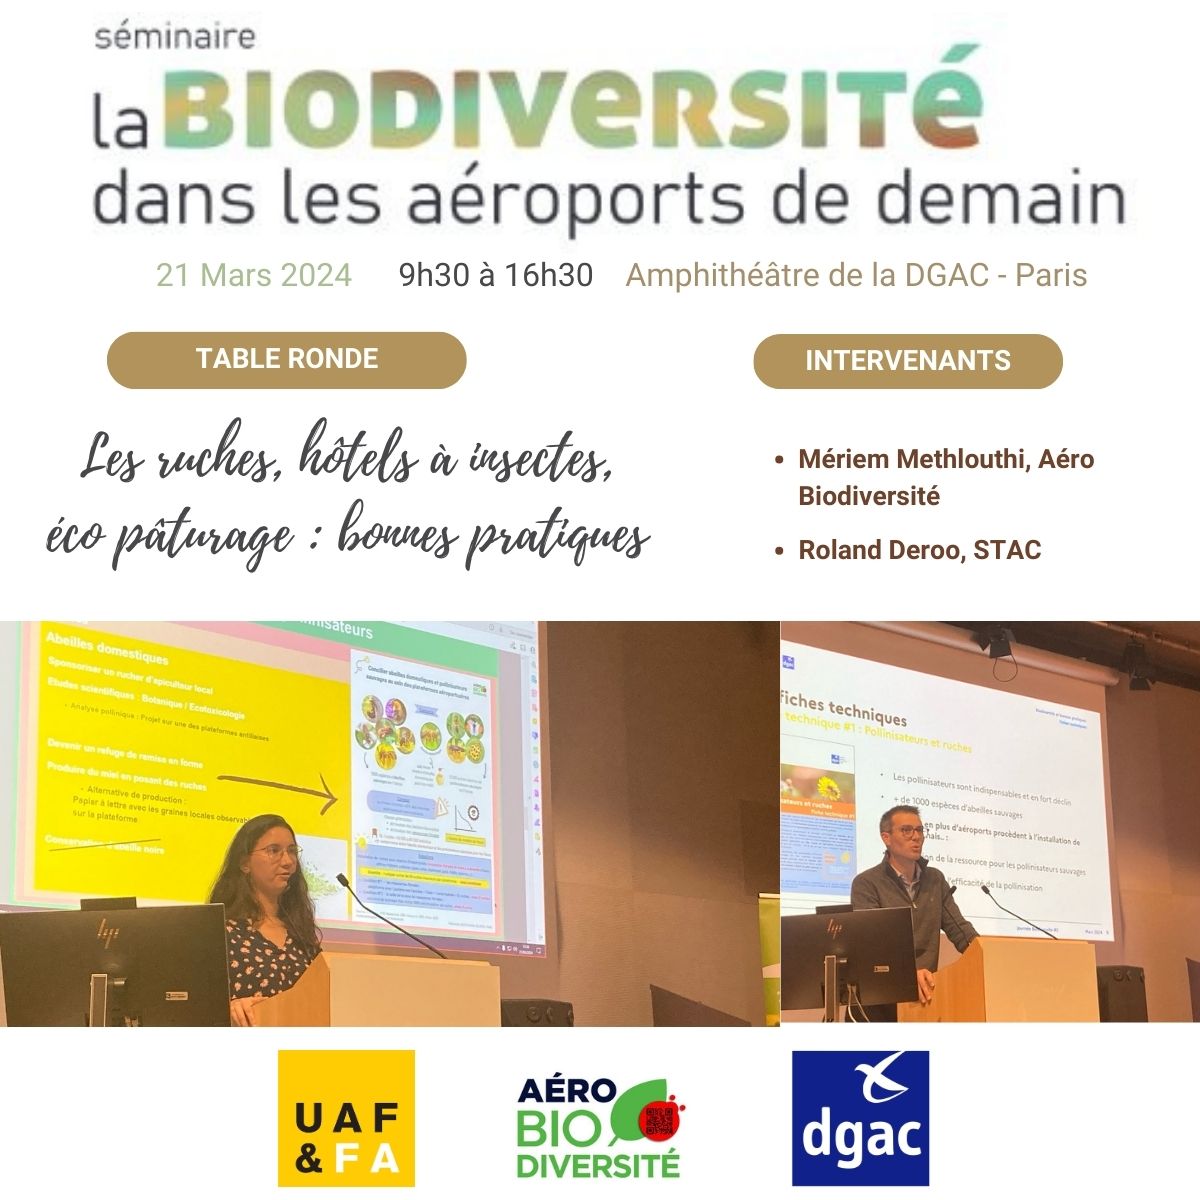 Le STAC a présenté ses nouvelles fiches techniques : 👉stac.aviation-civile.gouv.fr/fr/environneme… Mériem Methlouthi, Aéro Biodiversité a présenté les bonnes pratiques en faveur des insectes pollinisateurs et aussi les fausses bonnes idées.